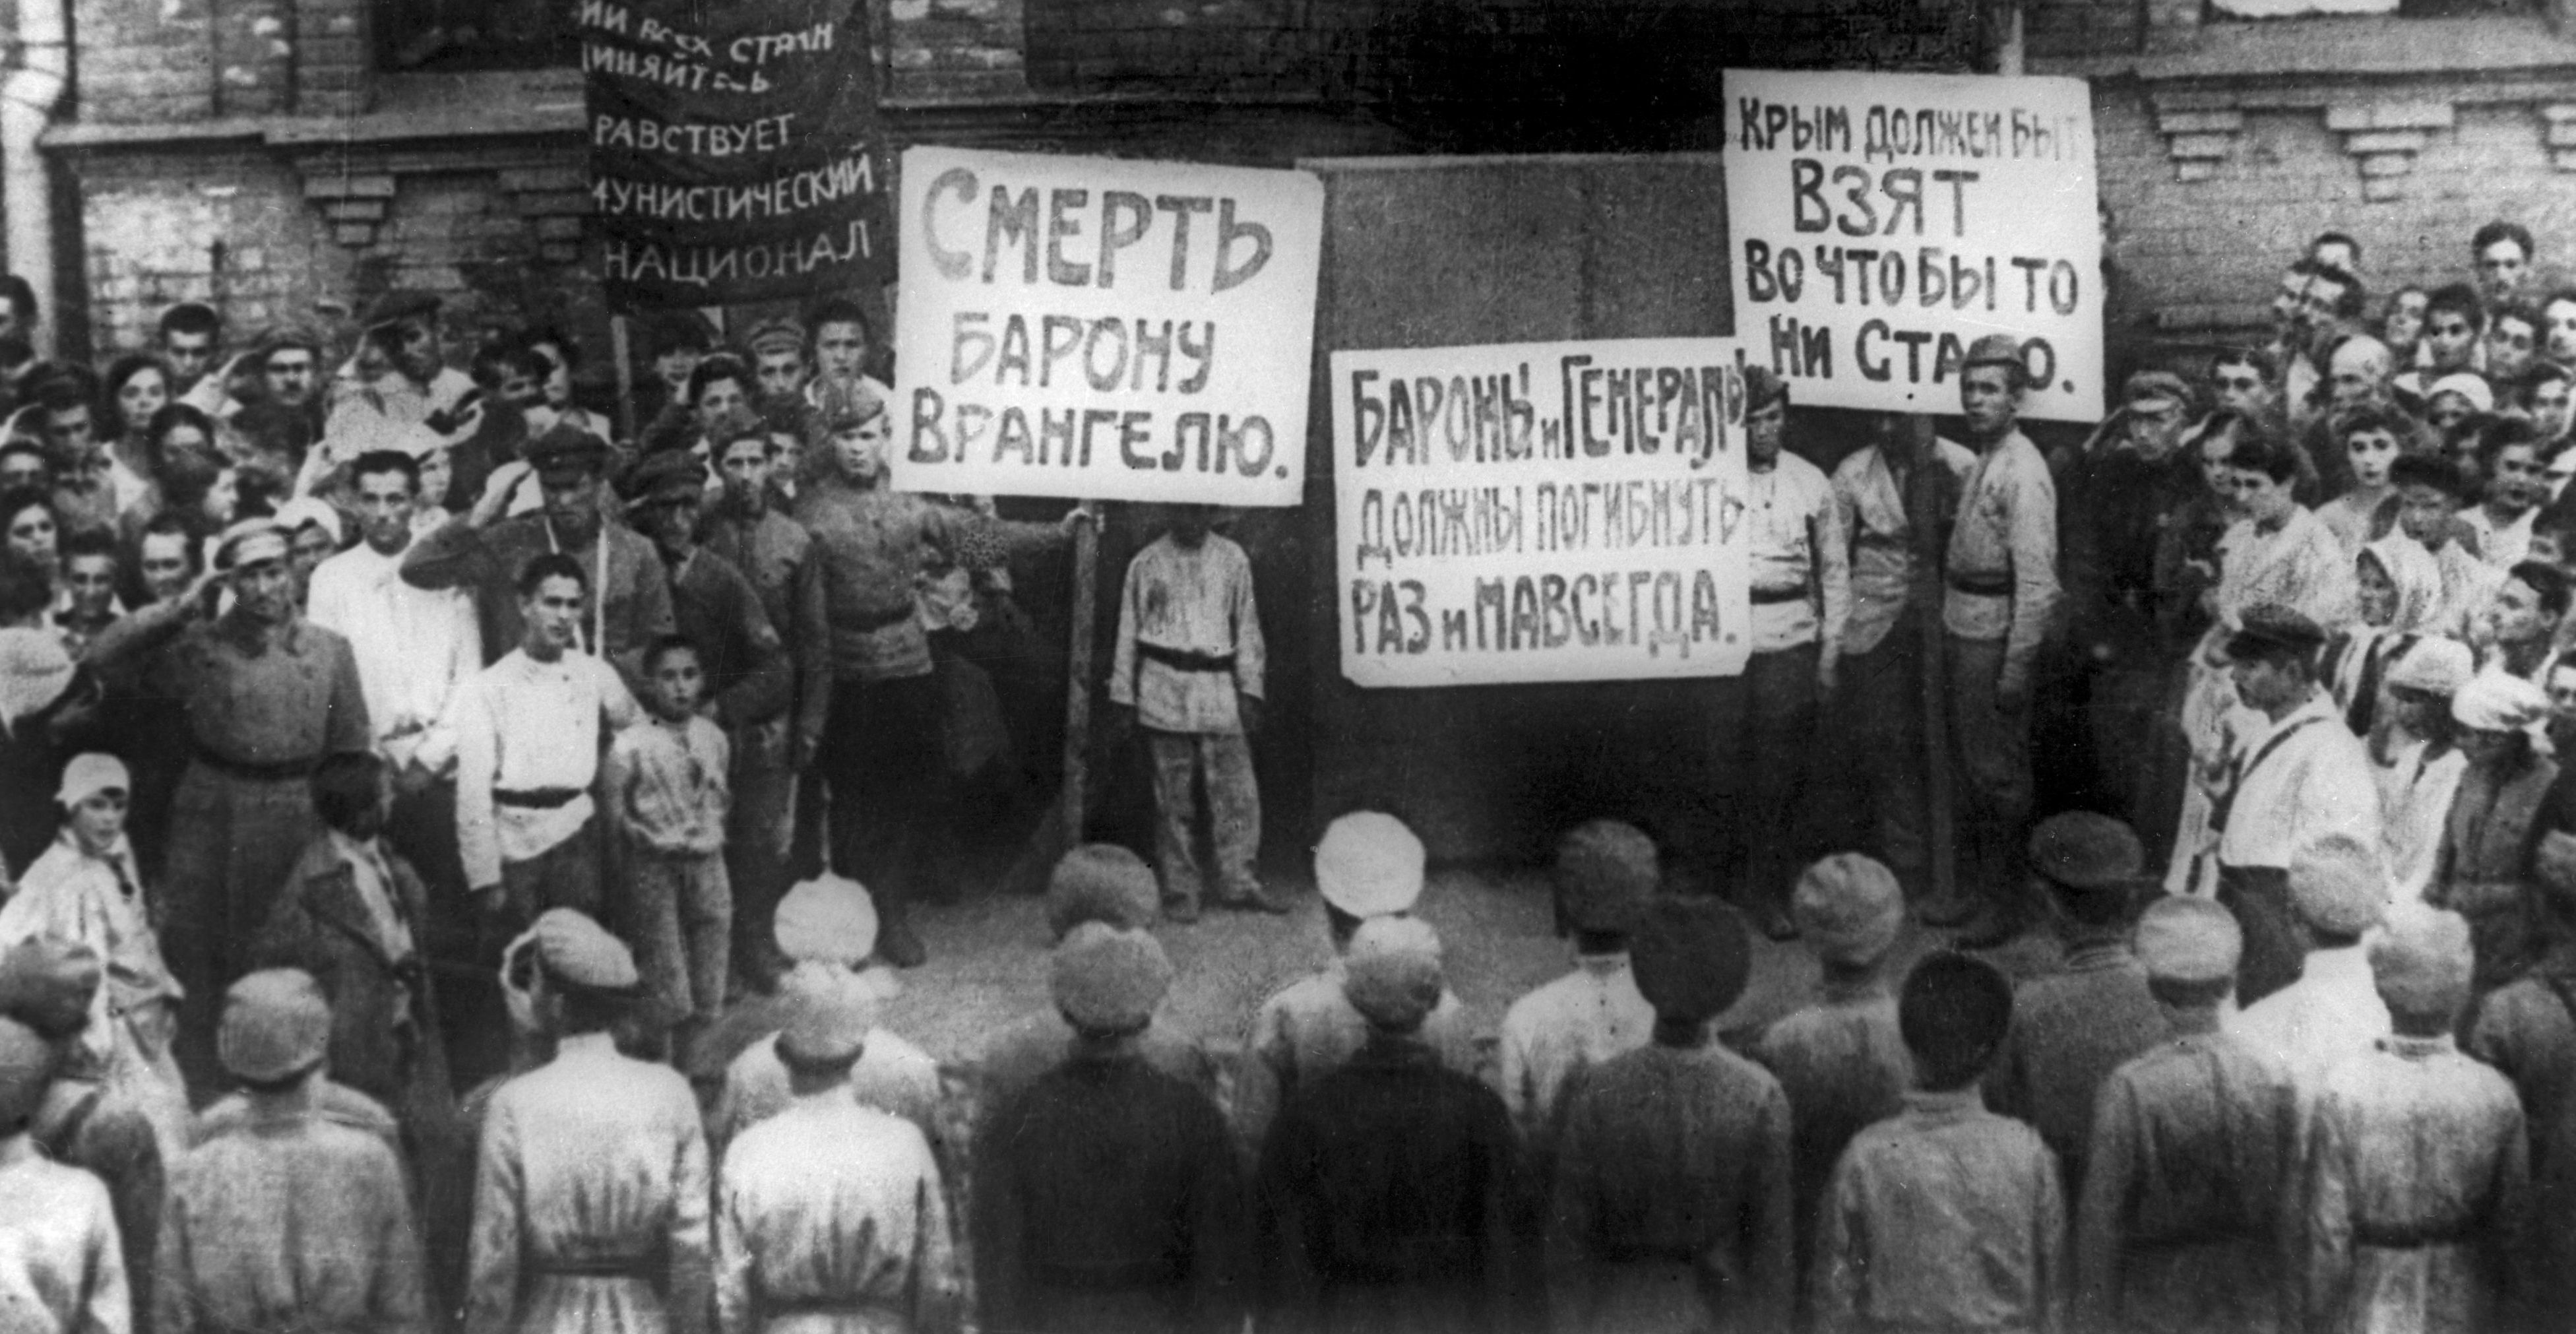 Митинг красноармейцев-комсомольцев, отправляющихся на борьбу с частями генерала Врангеля. Южный фронт, 1920 г